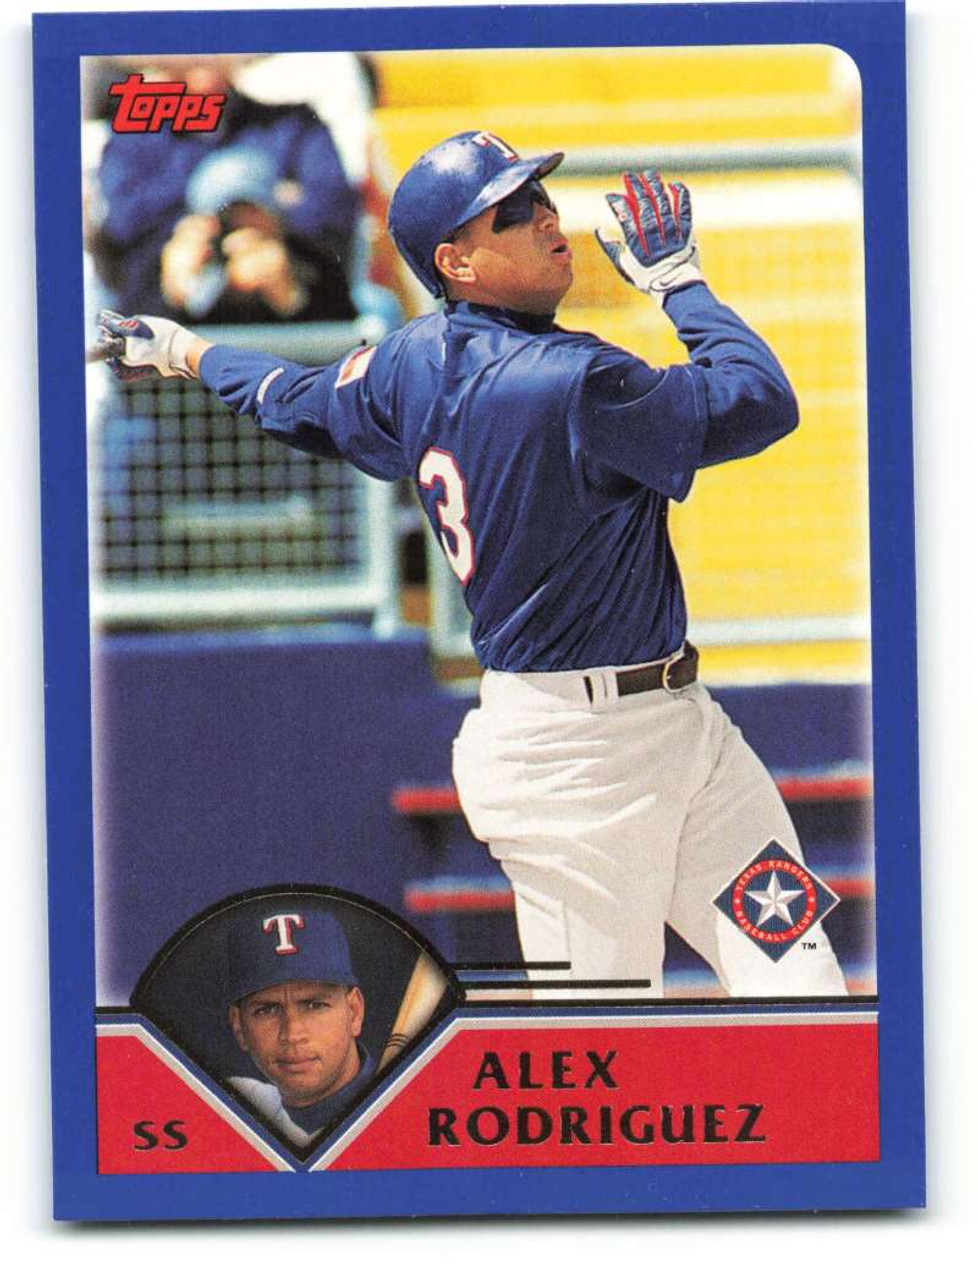 Alex Rodriguez - Texas Rangers  Texas rangers, Texas rangers baseball,  Rangers baseball